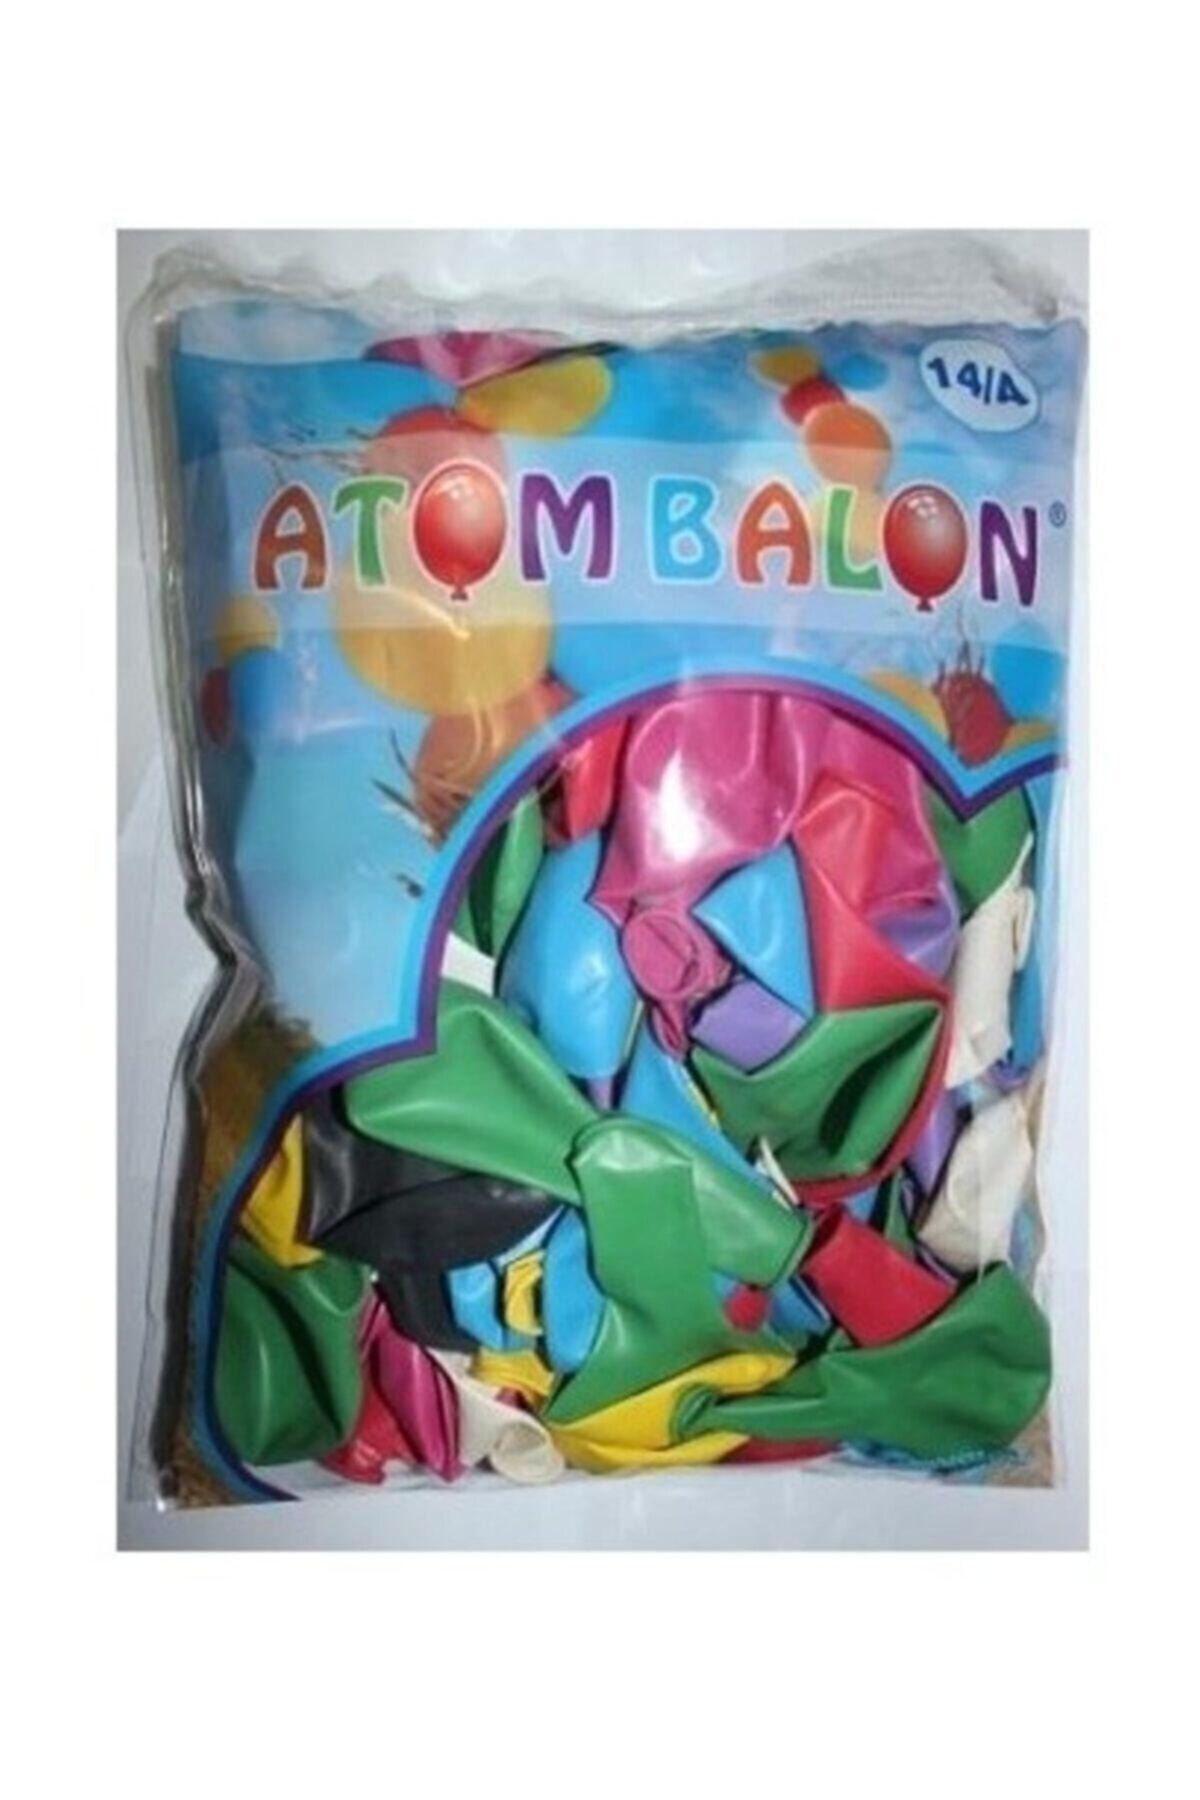 Atom Balon 14/a Desensiz Renkli Balon 100'lü